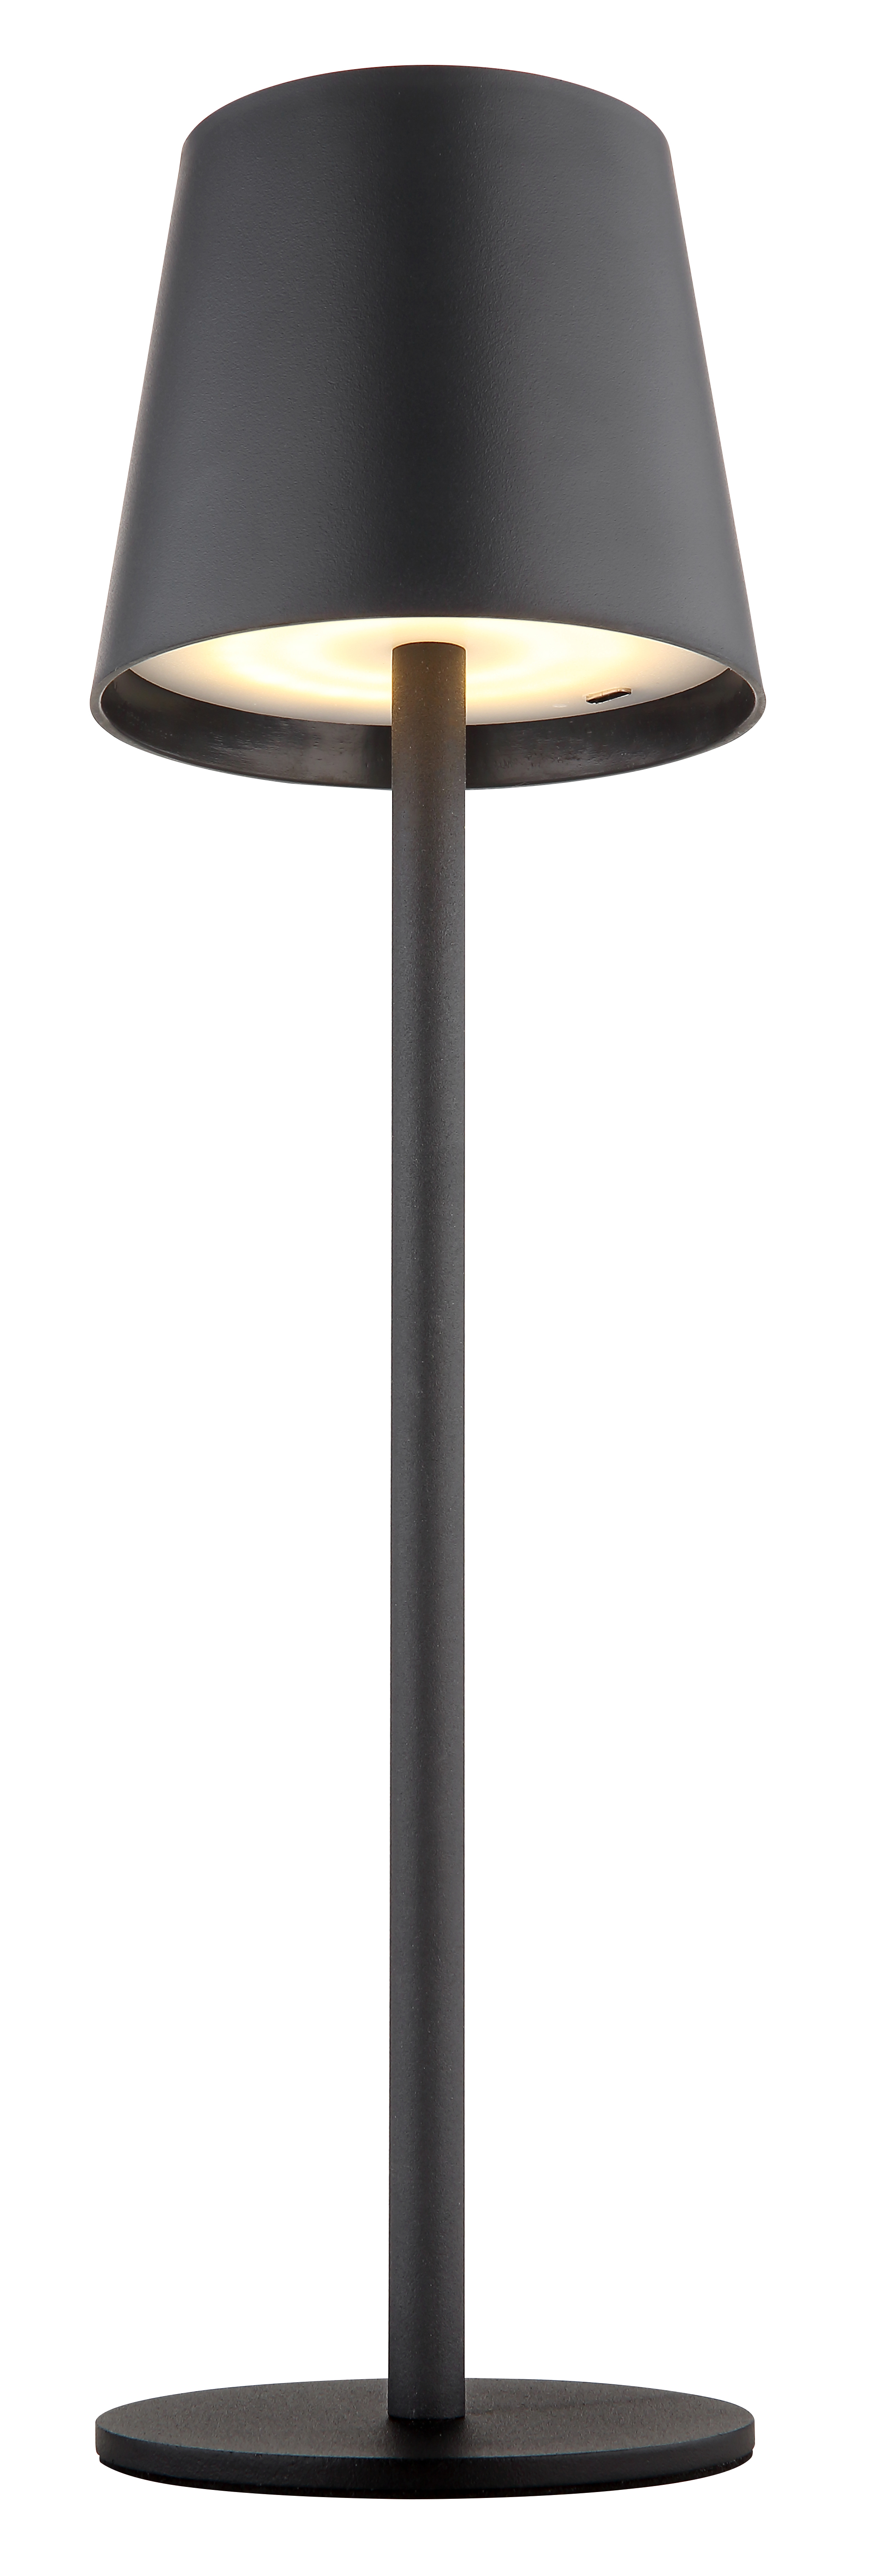 Tischleuchte - Metall schwarz matt - Kunststoff schwarz matt - 58438G